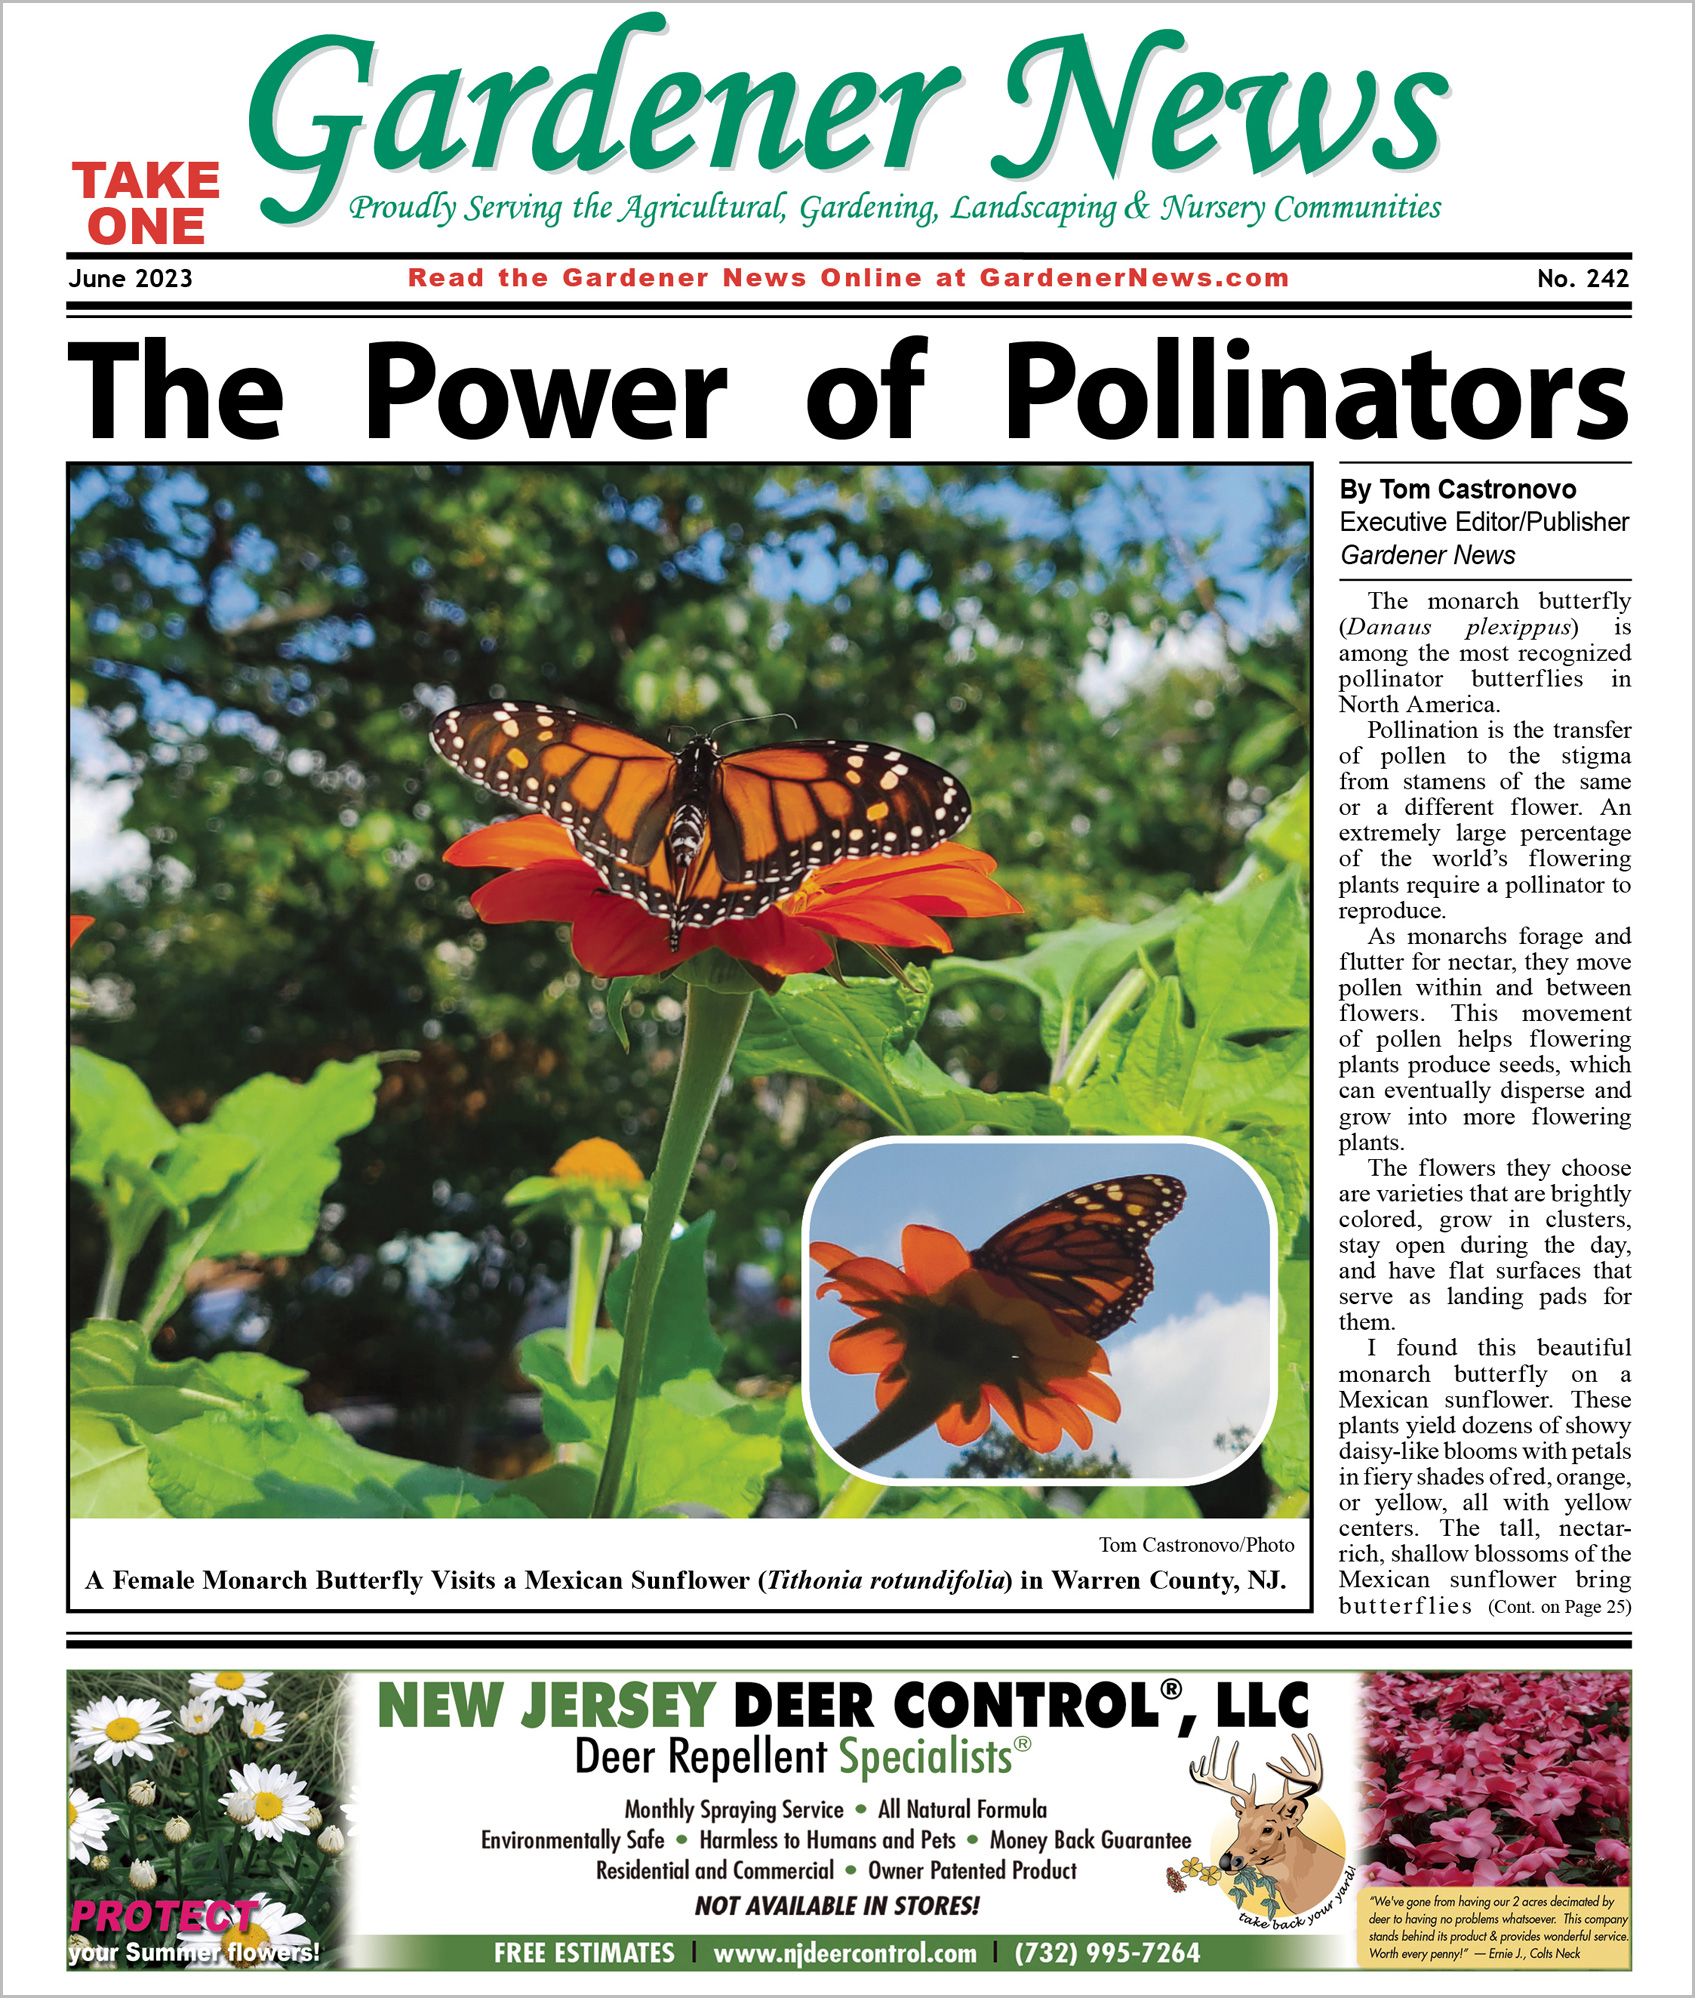 The June 2023 issue of the Gardener News